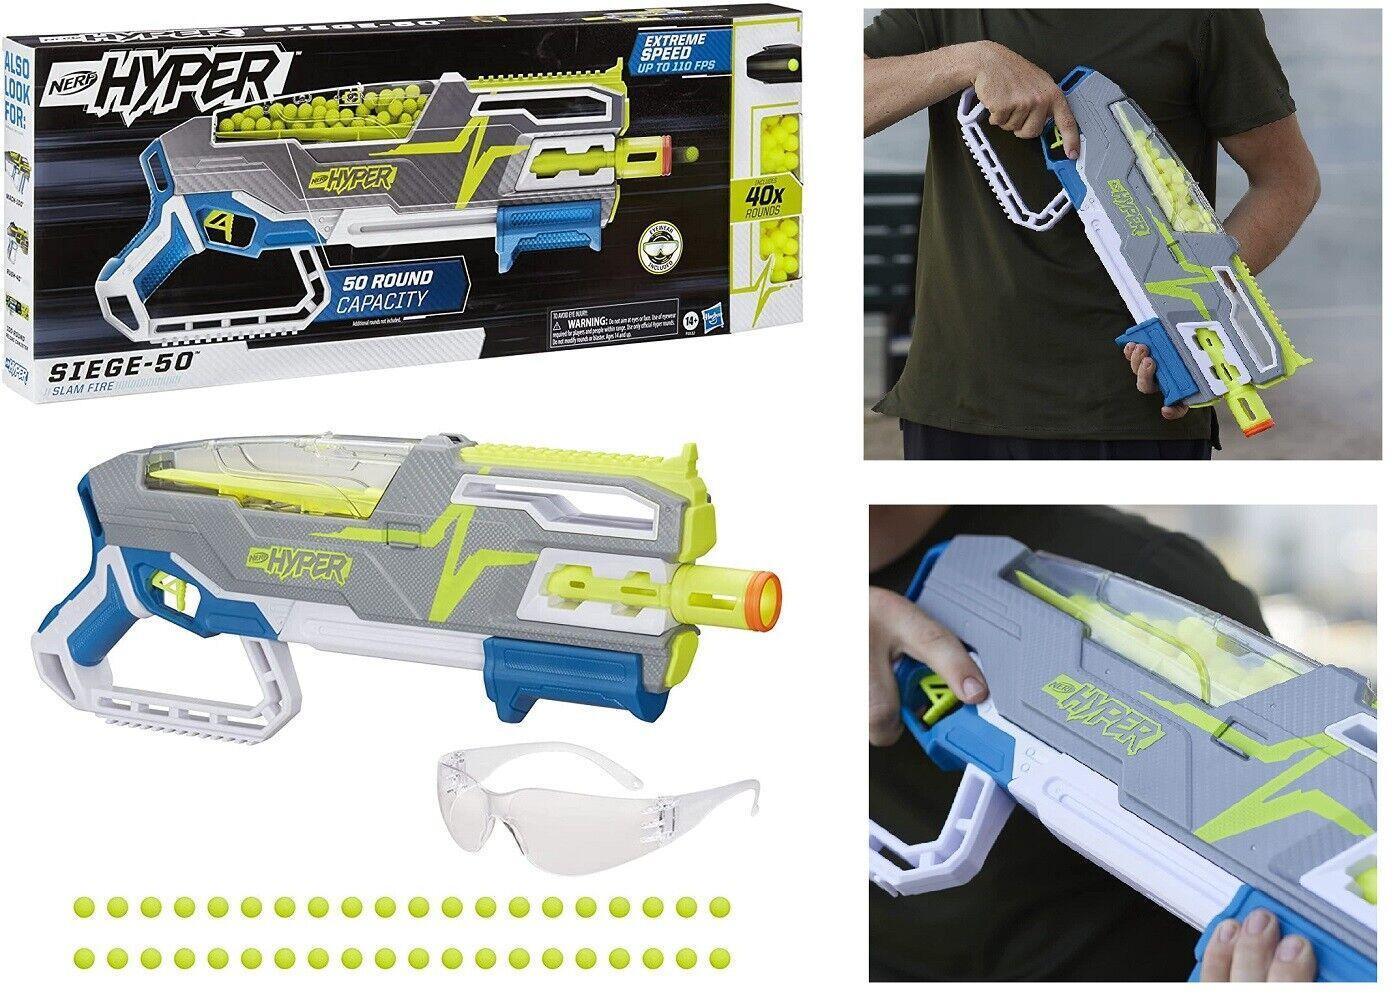 NERF Hyper Siege 50 Pump Action Blaster 40 Hyper Rounds with Eyewear Toy Gun